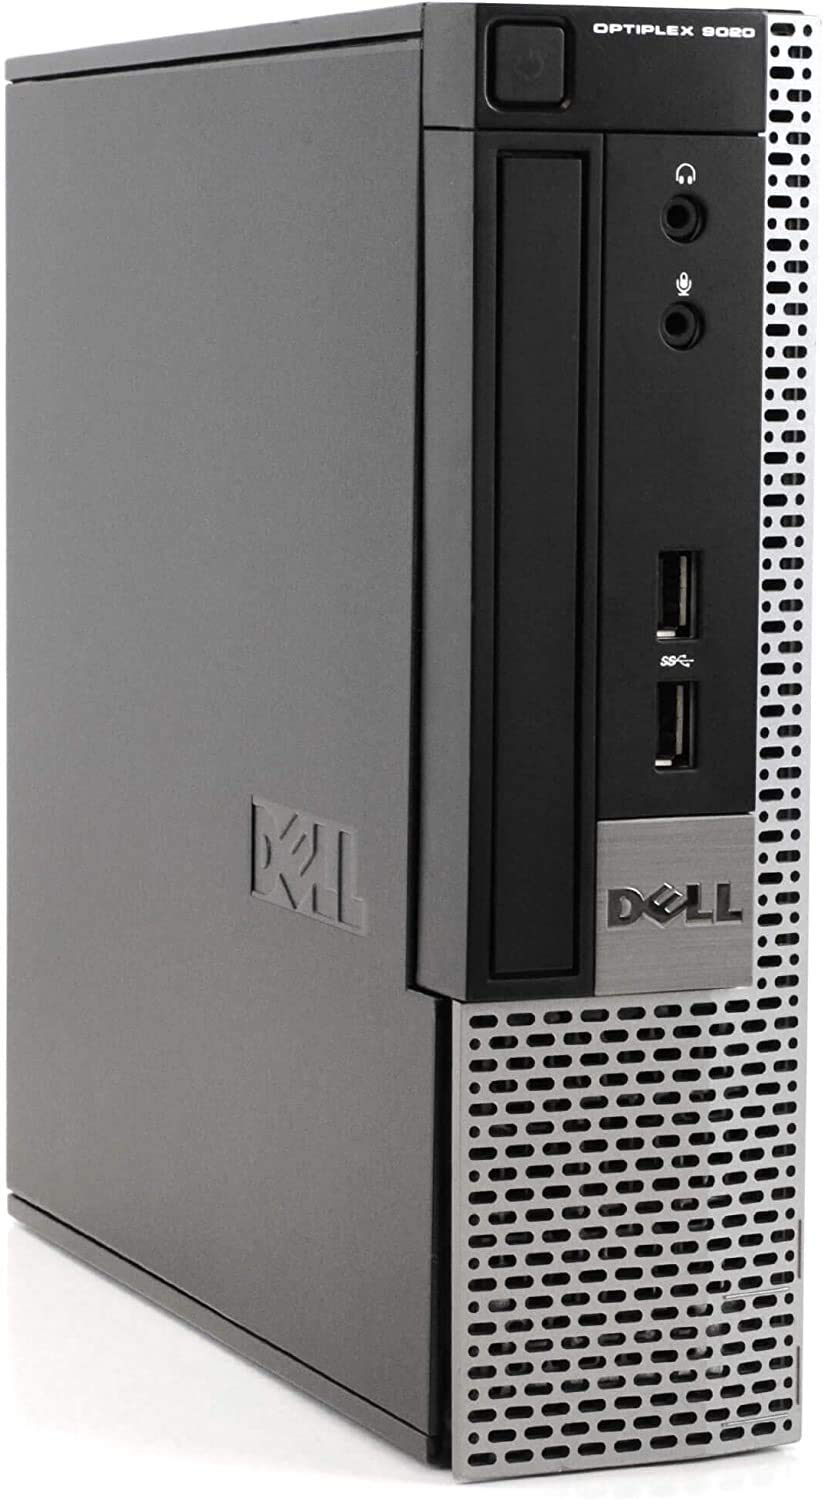 2018 DELL OPTIPLEX 9020 USFF Desktop Computer,Intel Core I5-4570s 2.9GHz up to 3.6GHz, 8GB DDR3, 240GB SSD, DVD, WIFI,HDMI,VGA,Display Port, USB 3....